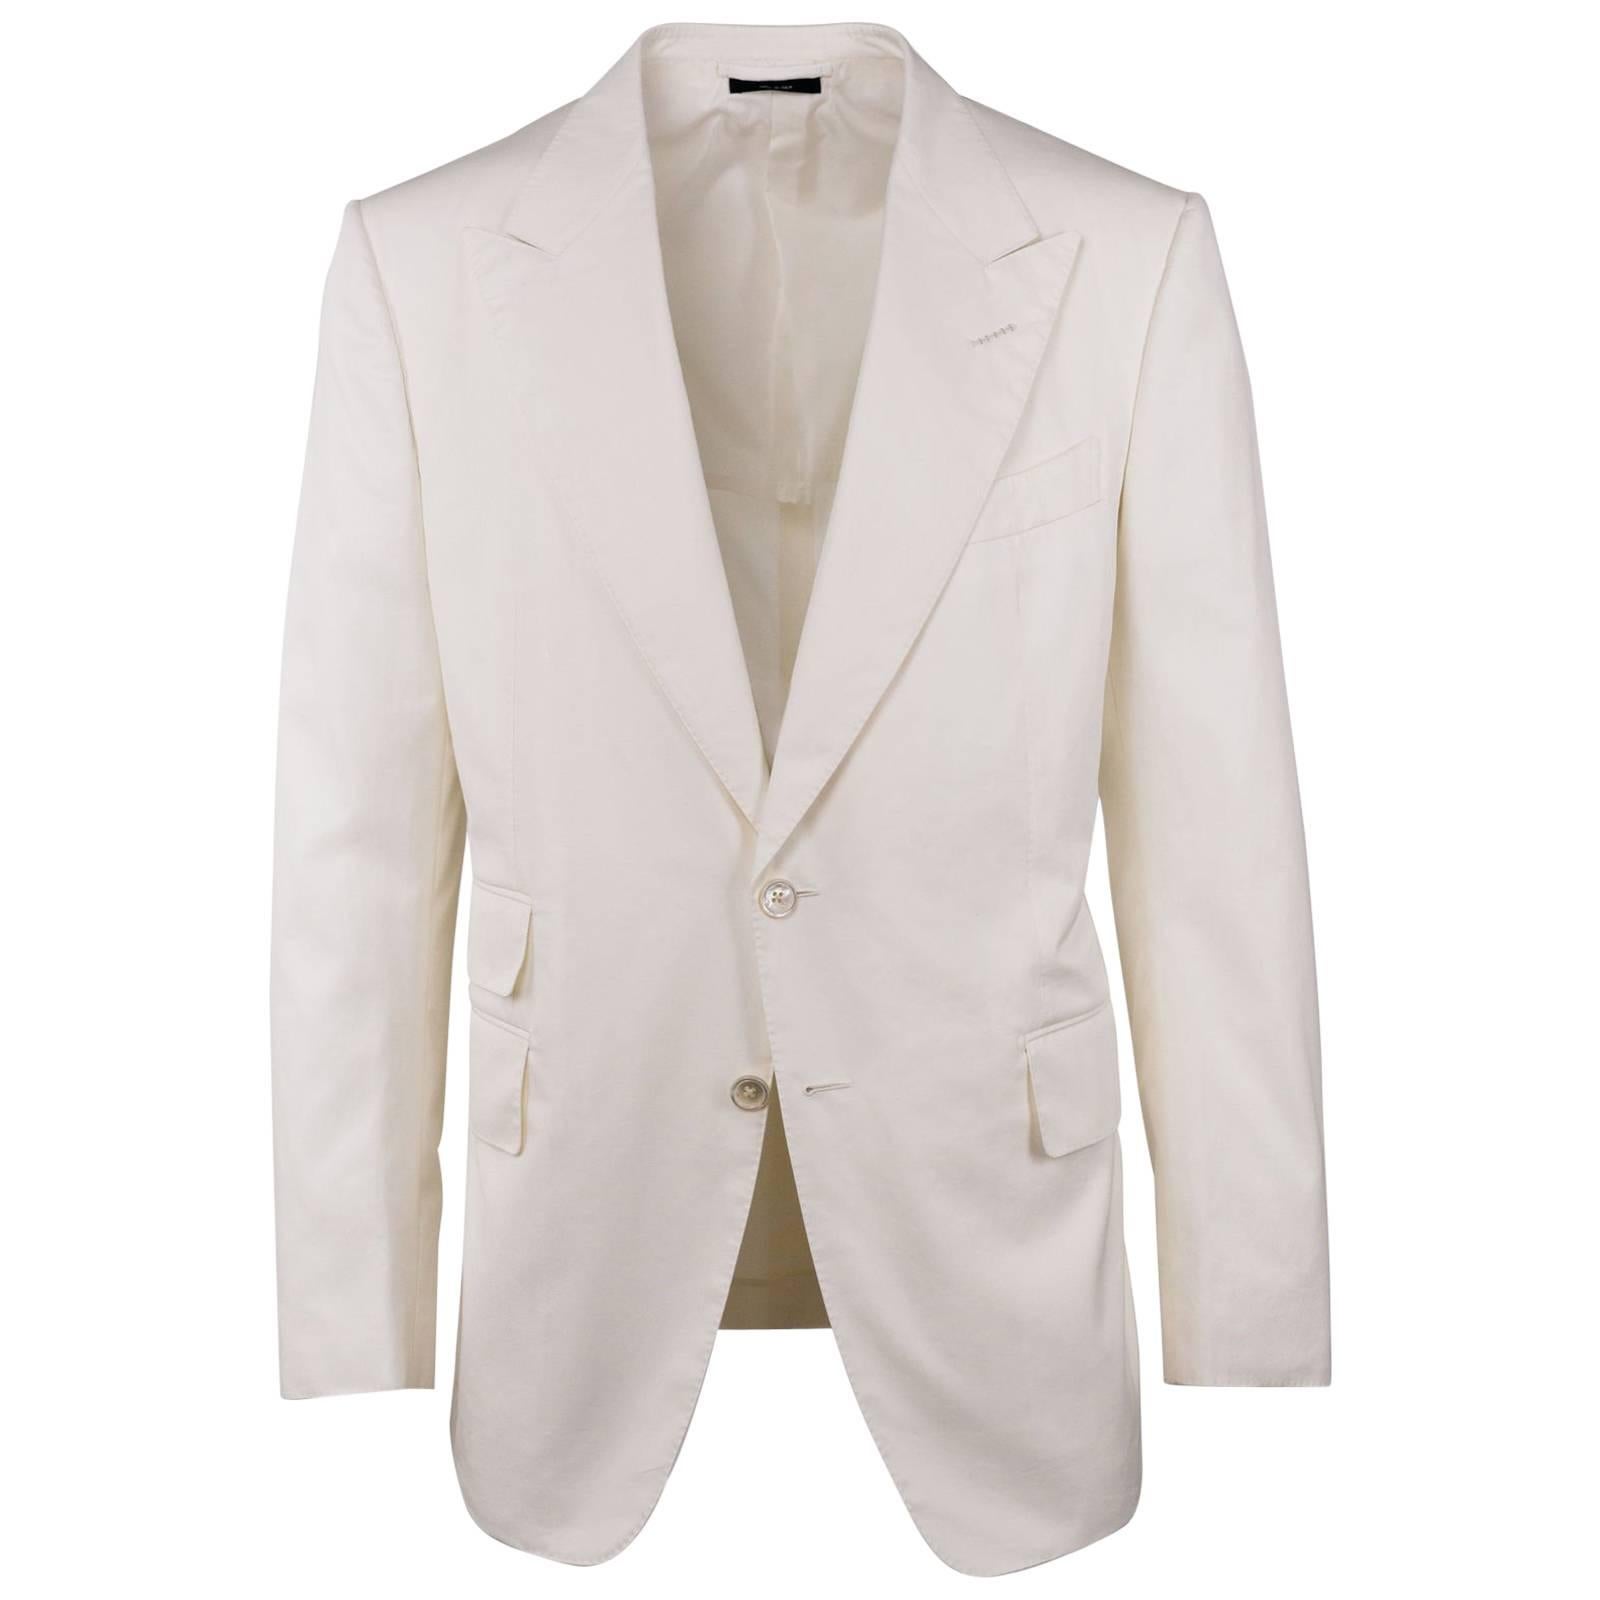 Tom Ford Men's Ivory Cotton Peak Lapel Two Piece Shelton Suit For Sale